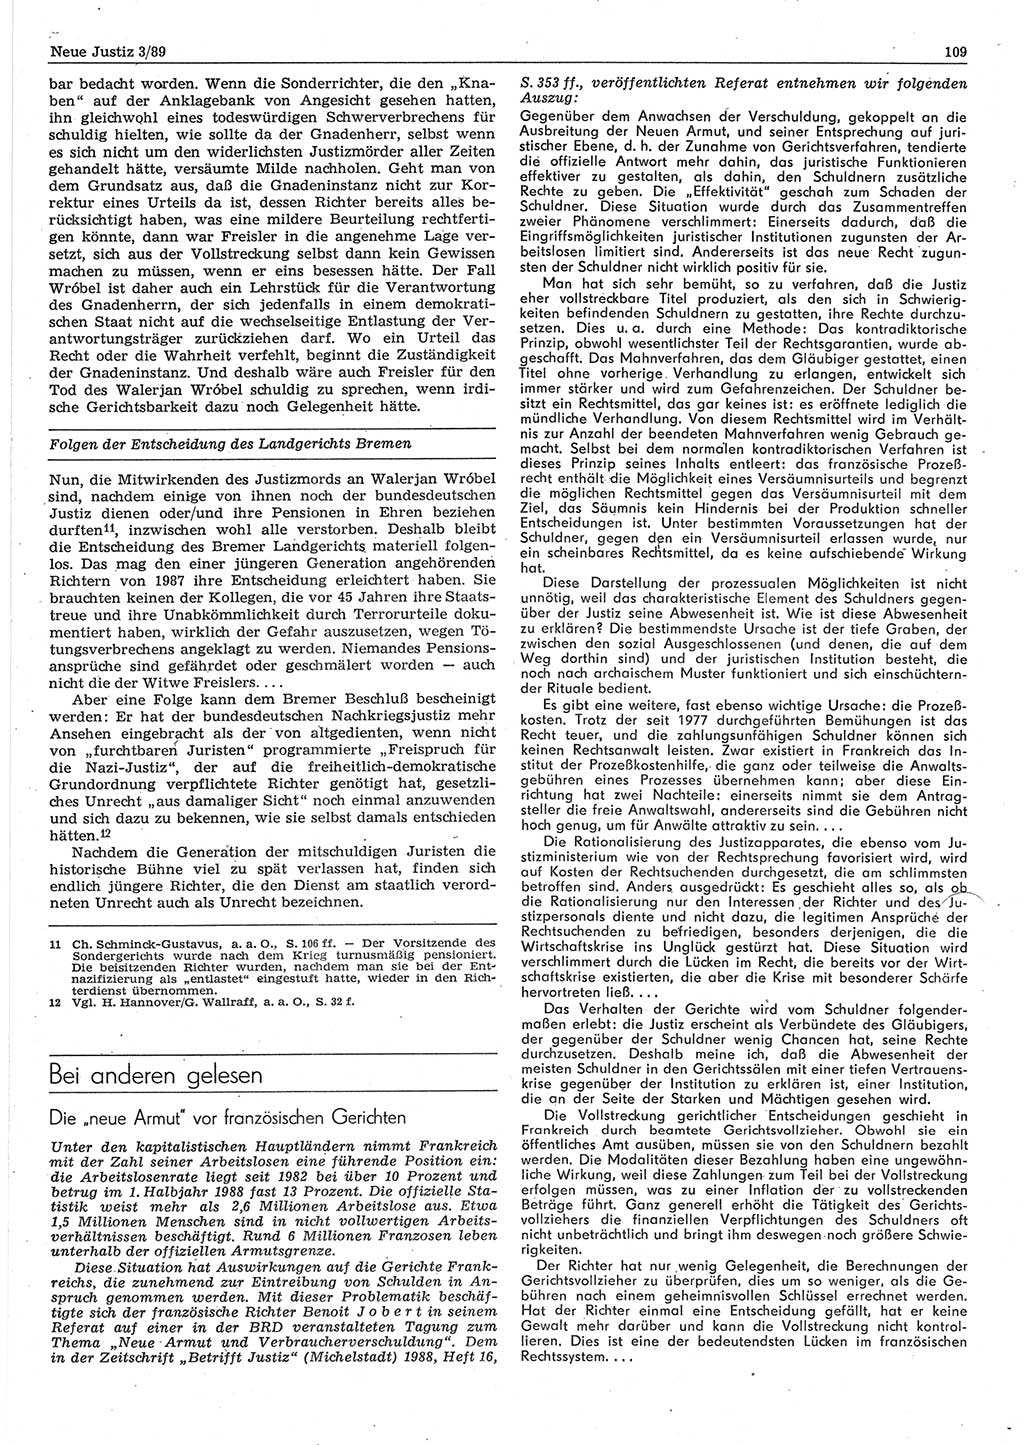 Neue Justiz (NJ), Zeitschrift für sozialistisches Recht und Gesetzlichkeit [Deutsche Demokratische Republik (DDR)], 43. Jahrgang 1989, Seite 109 (NJ DDR 1989, S. 109)